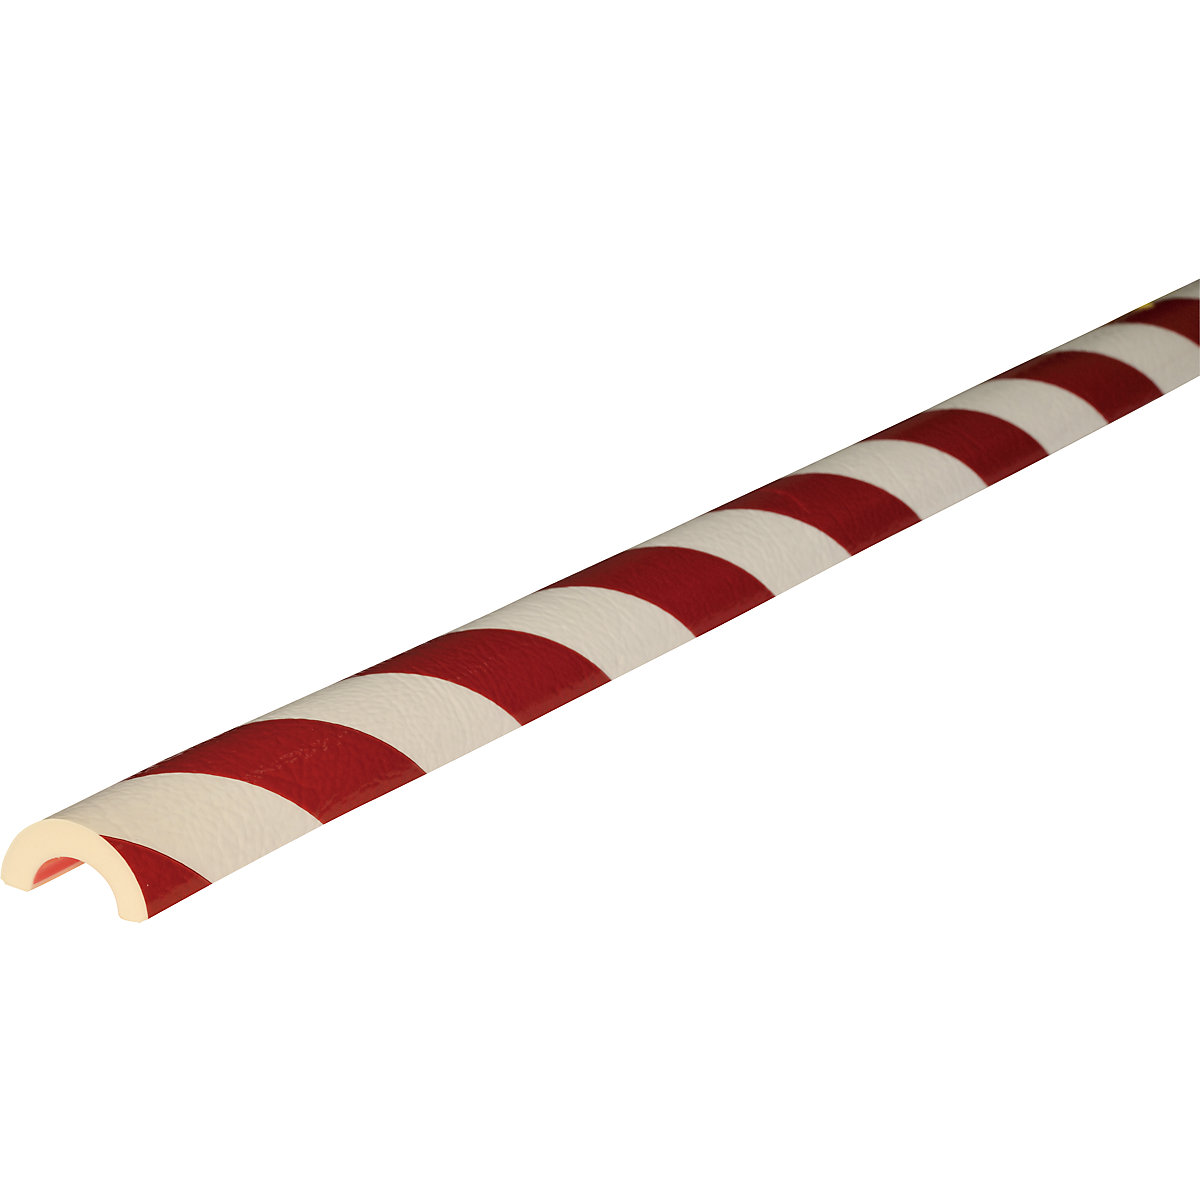 Protection des tuyaux Knuffi® – SHG, type R30, pièce de 1 m, rouge / blanc